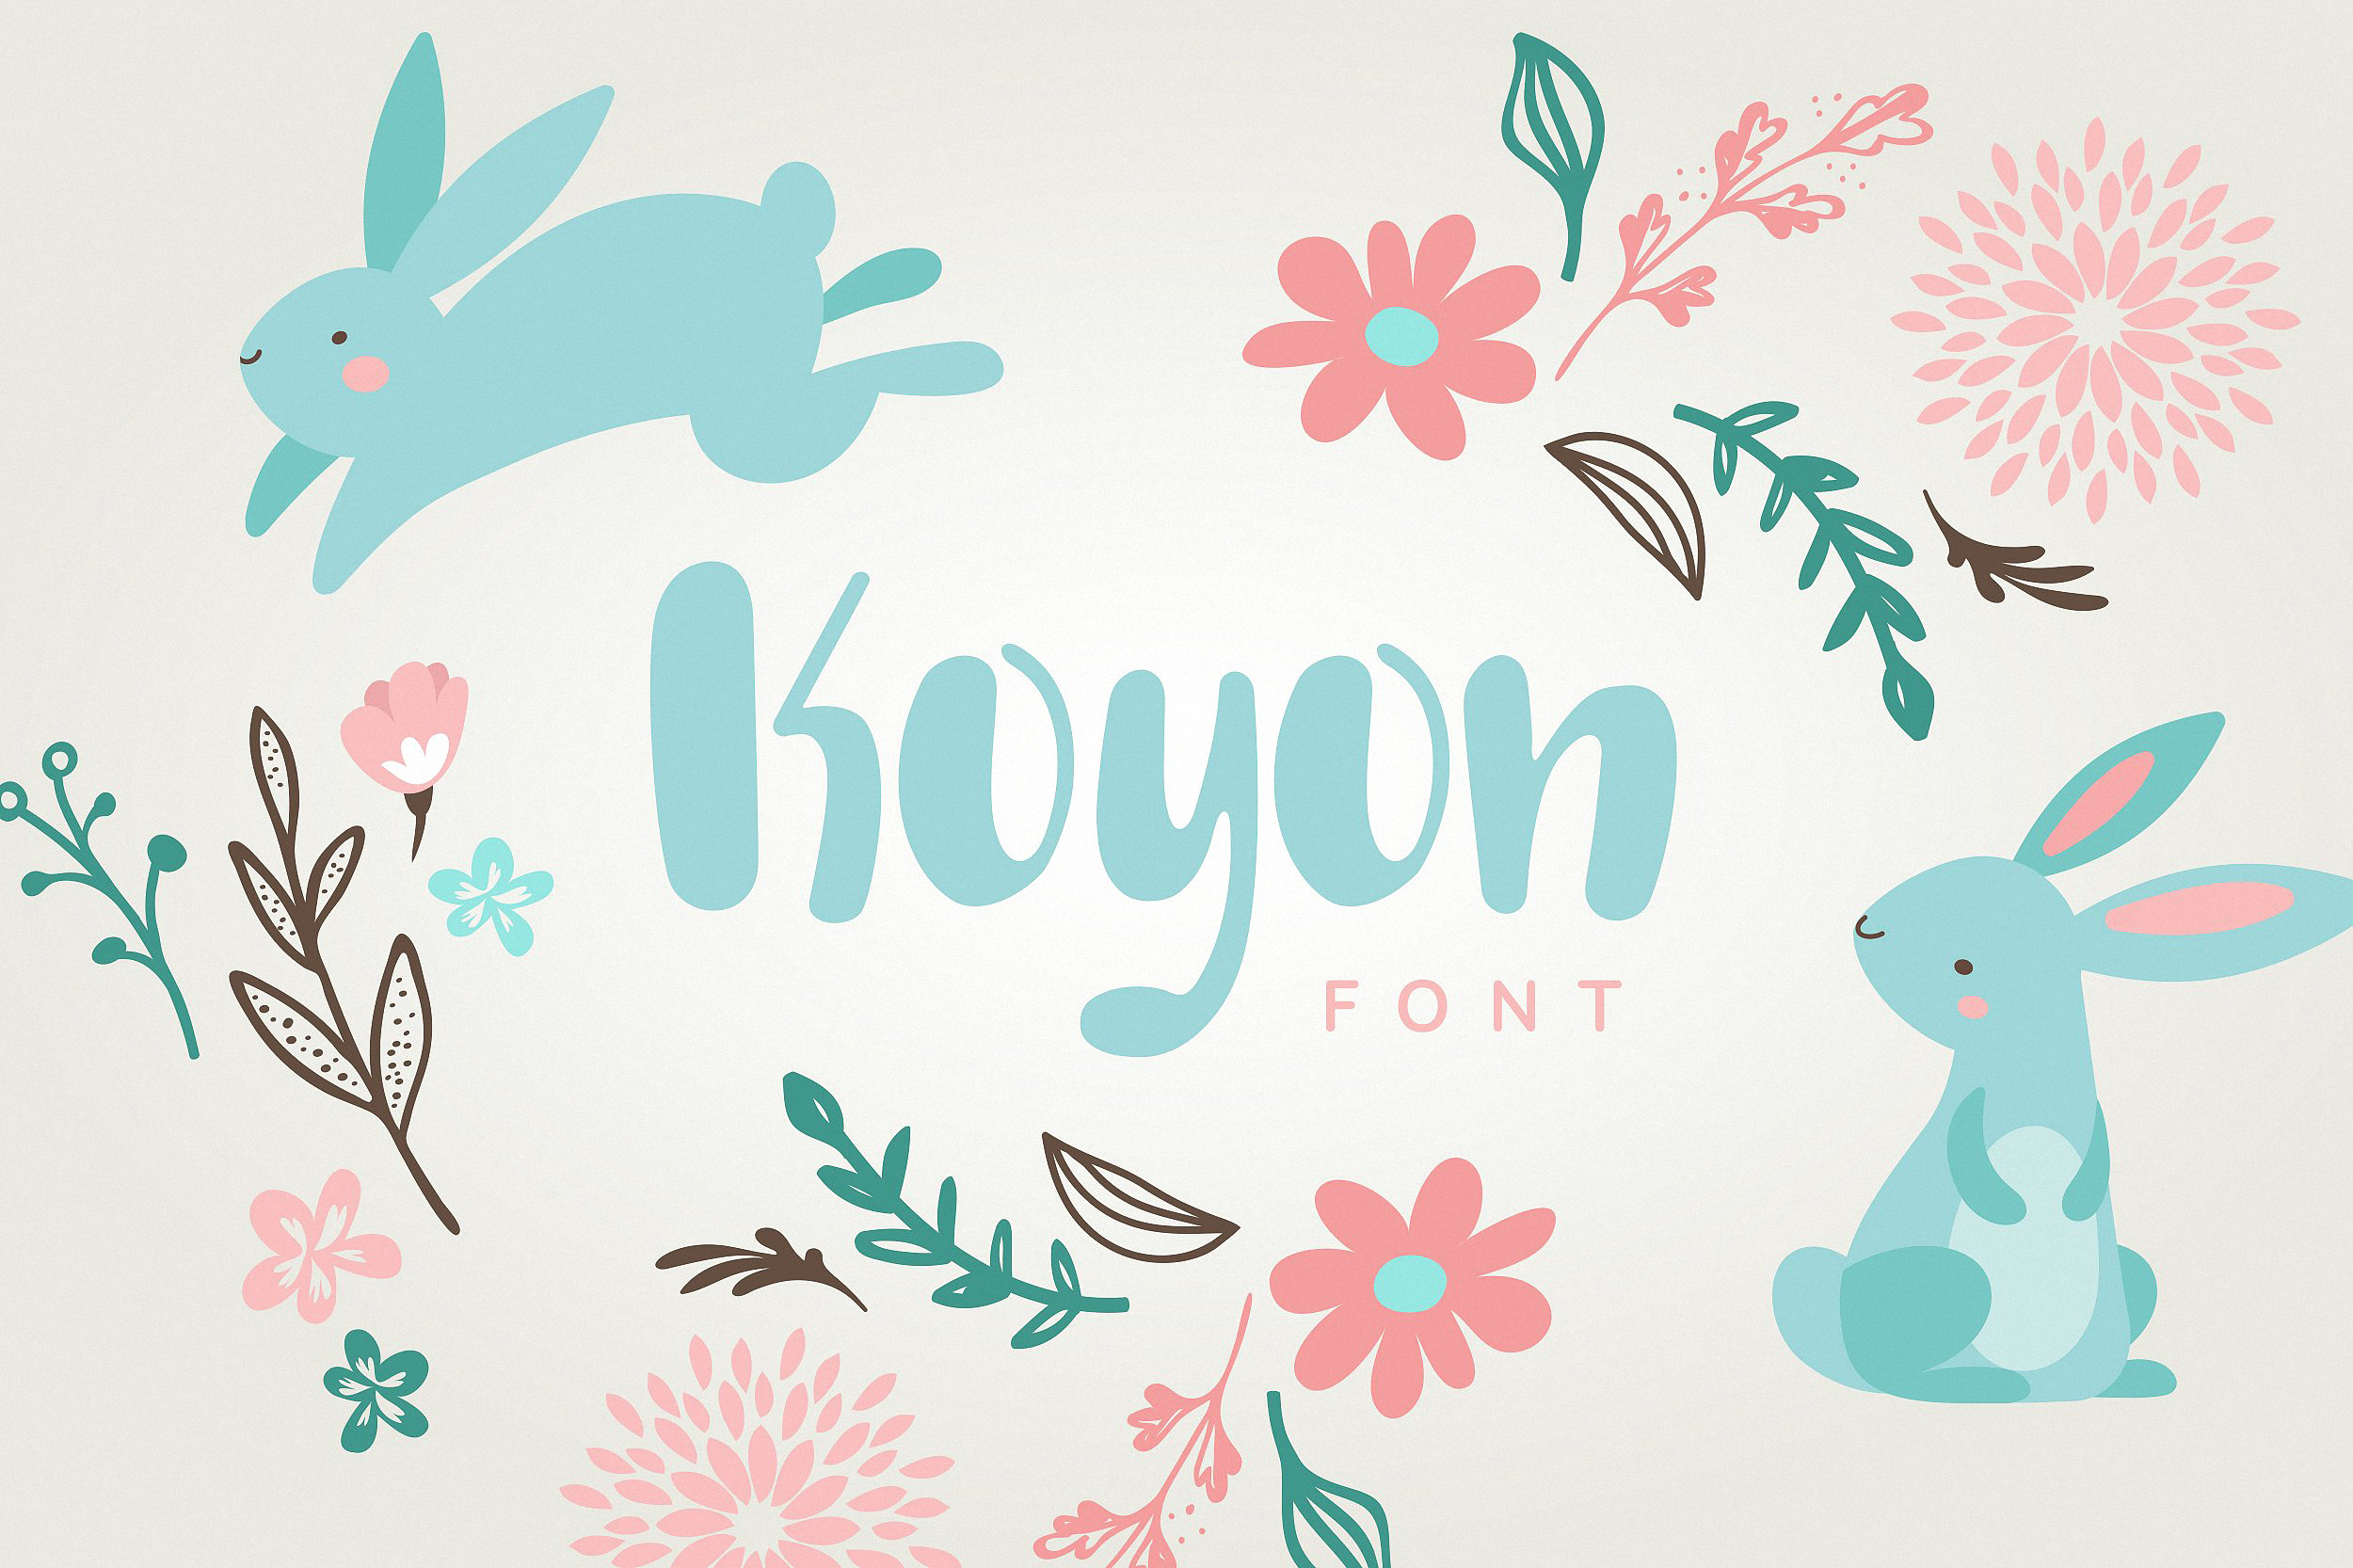 Koyon Font